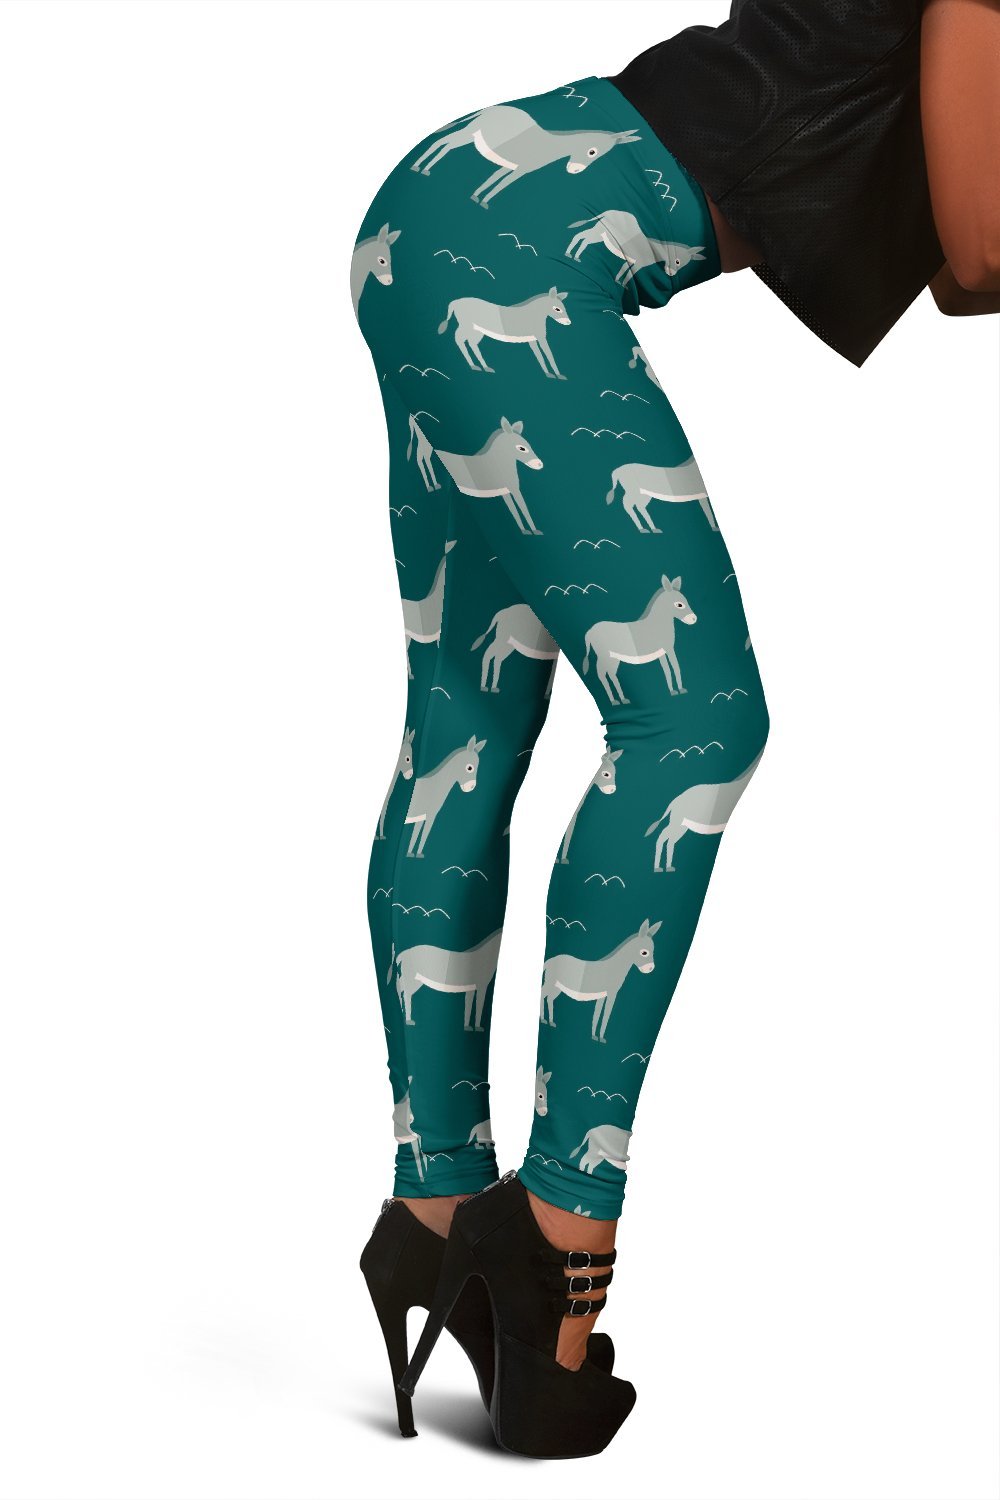 Pattern Print Donkey Women Leggings-grizzshop